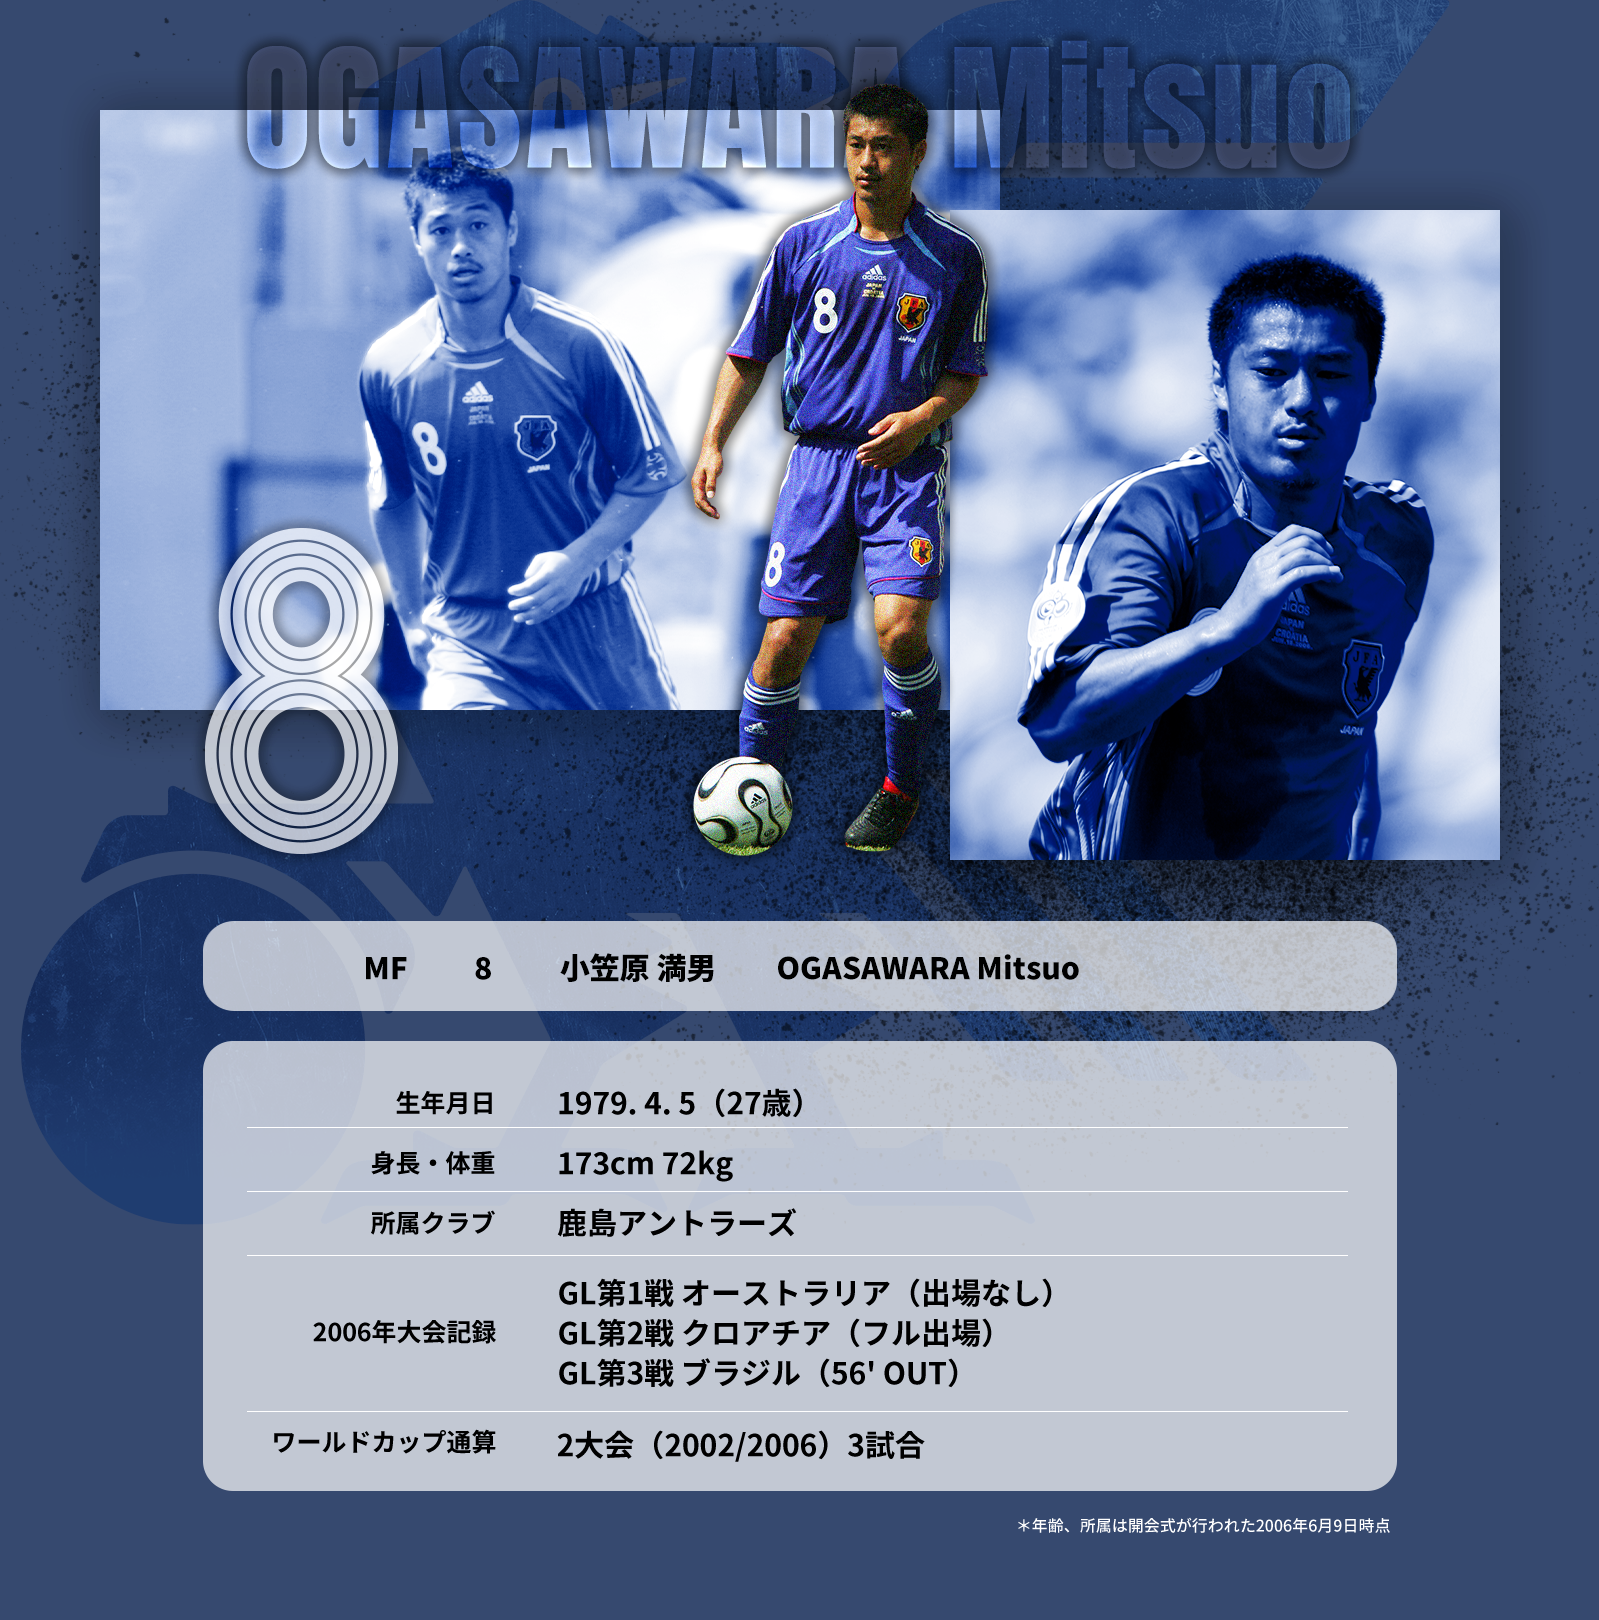 小野伸二 引退 ユニフォーム レプリカ サッカー日本代表 2002W杯 日韓大会